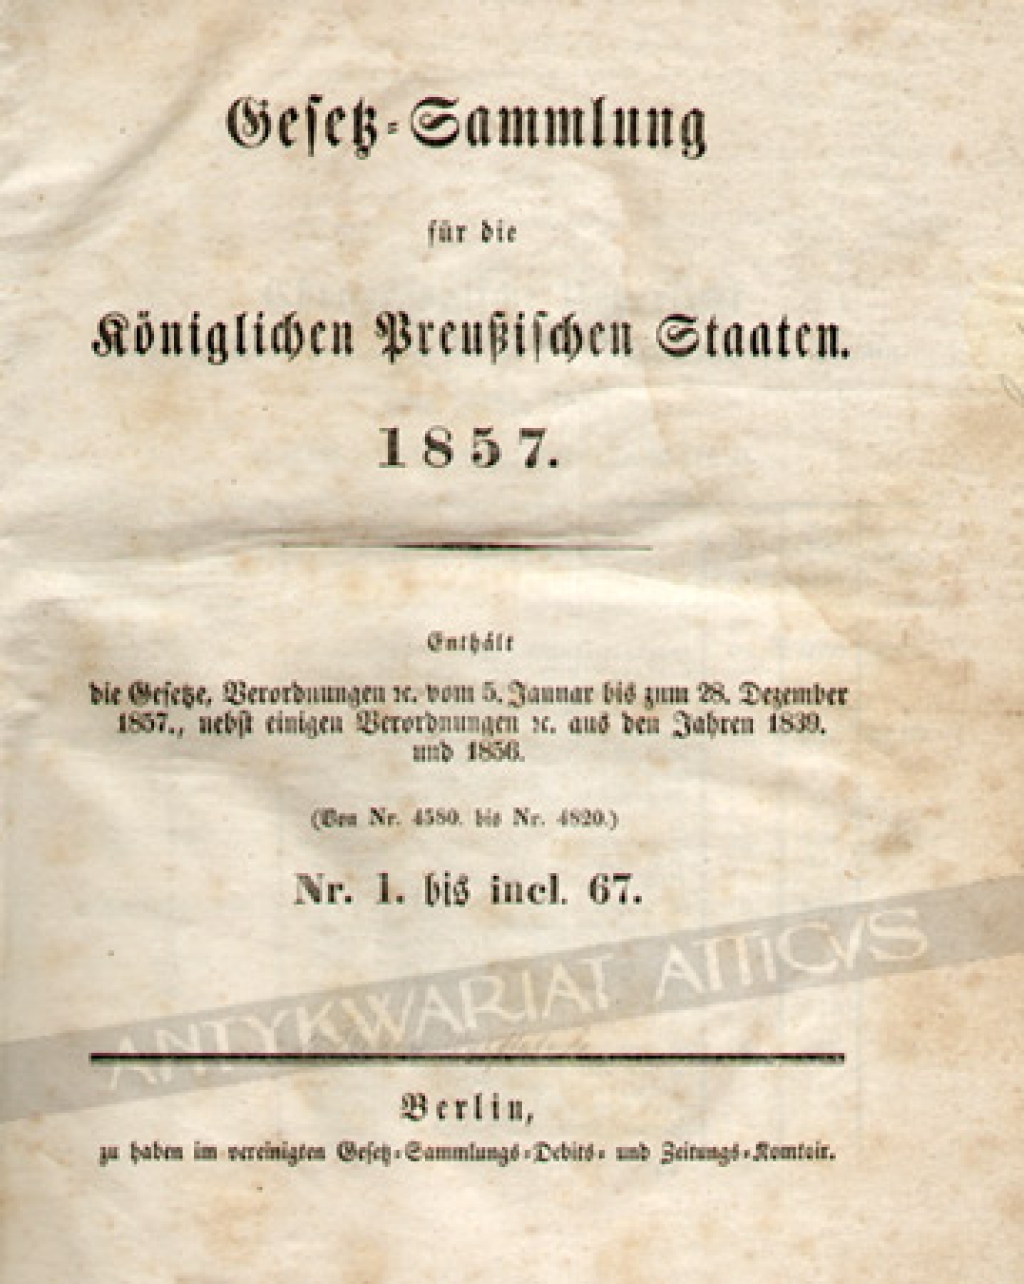 Gesetz-Sammlung fur die Koniglichen Preussischen Staaten 1857. Enhalt die Gesetze, Verordnungen vom 5. Januar bis zum 28. Dezember 1857., nebst einigen Verordnungen aus den Jahren 1839 und 1856 (von Nr. 4580 bis Nr. 4820) Nr. 1. bis incl. 67